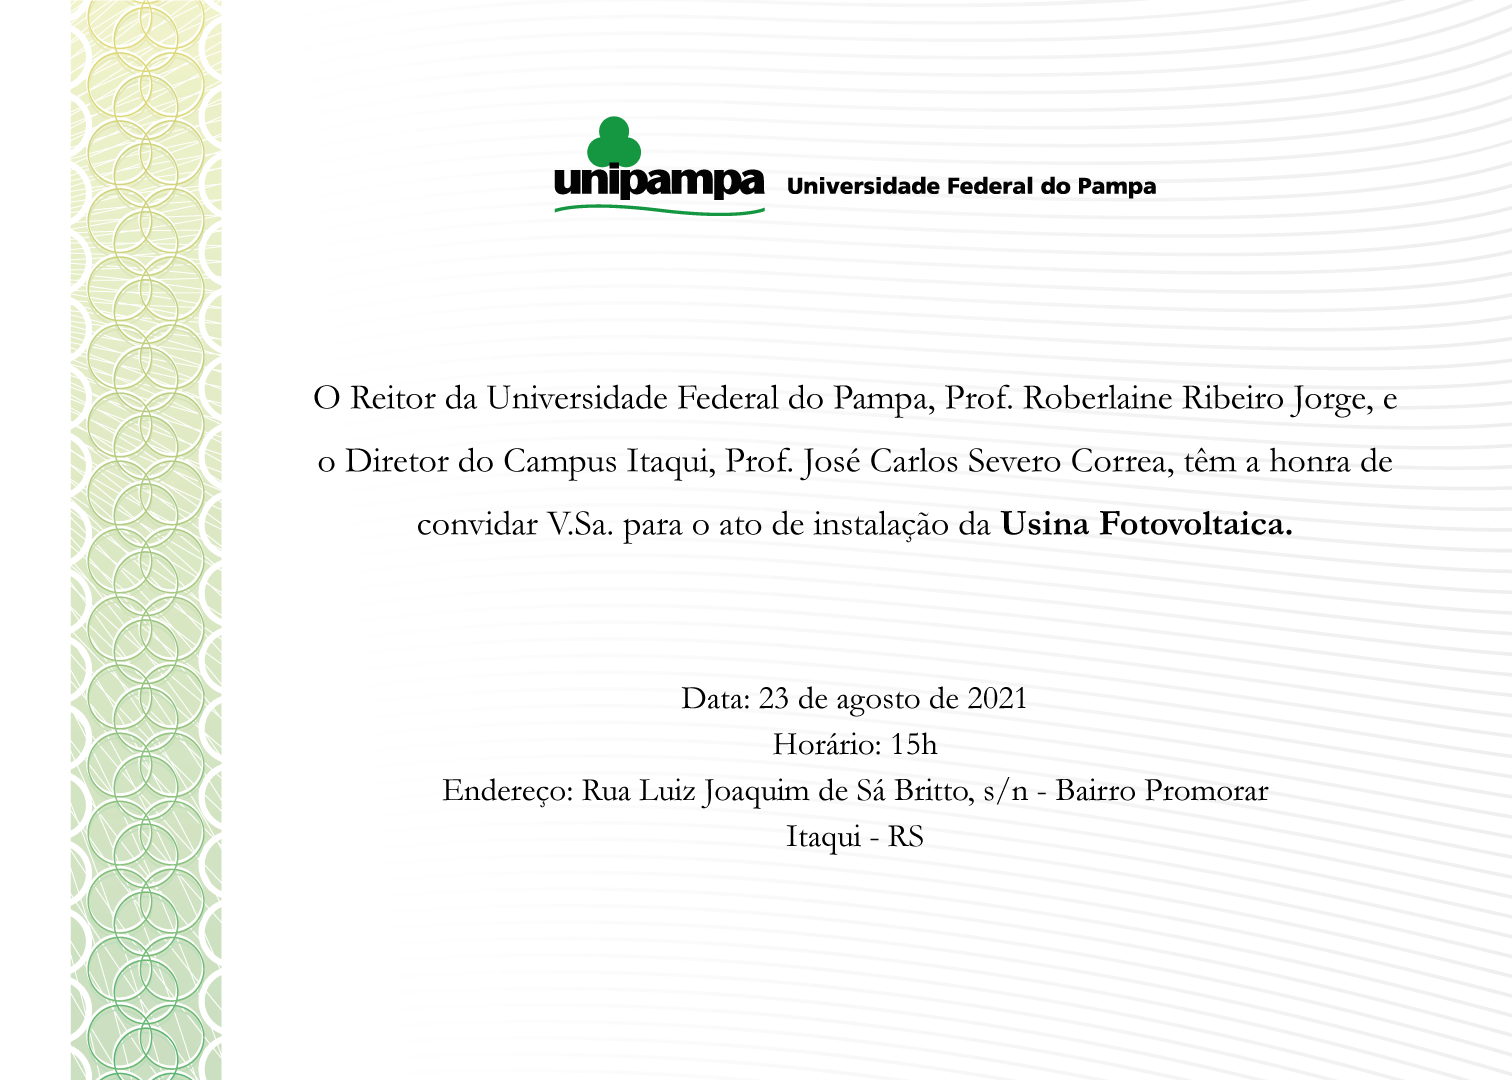 Convite para inauguração da Usina Fotovoltaica do Campus Itaqui - Divulgação